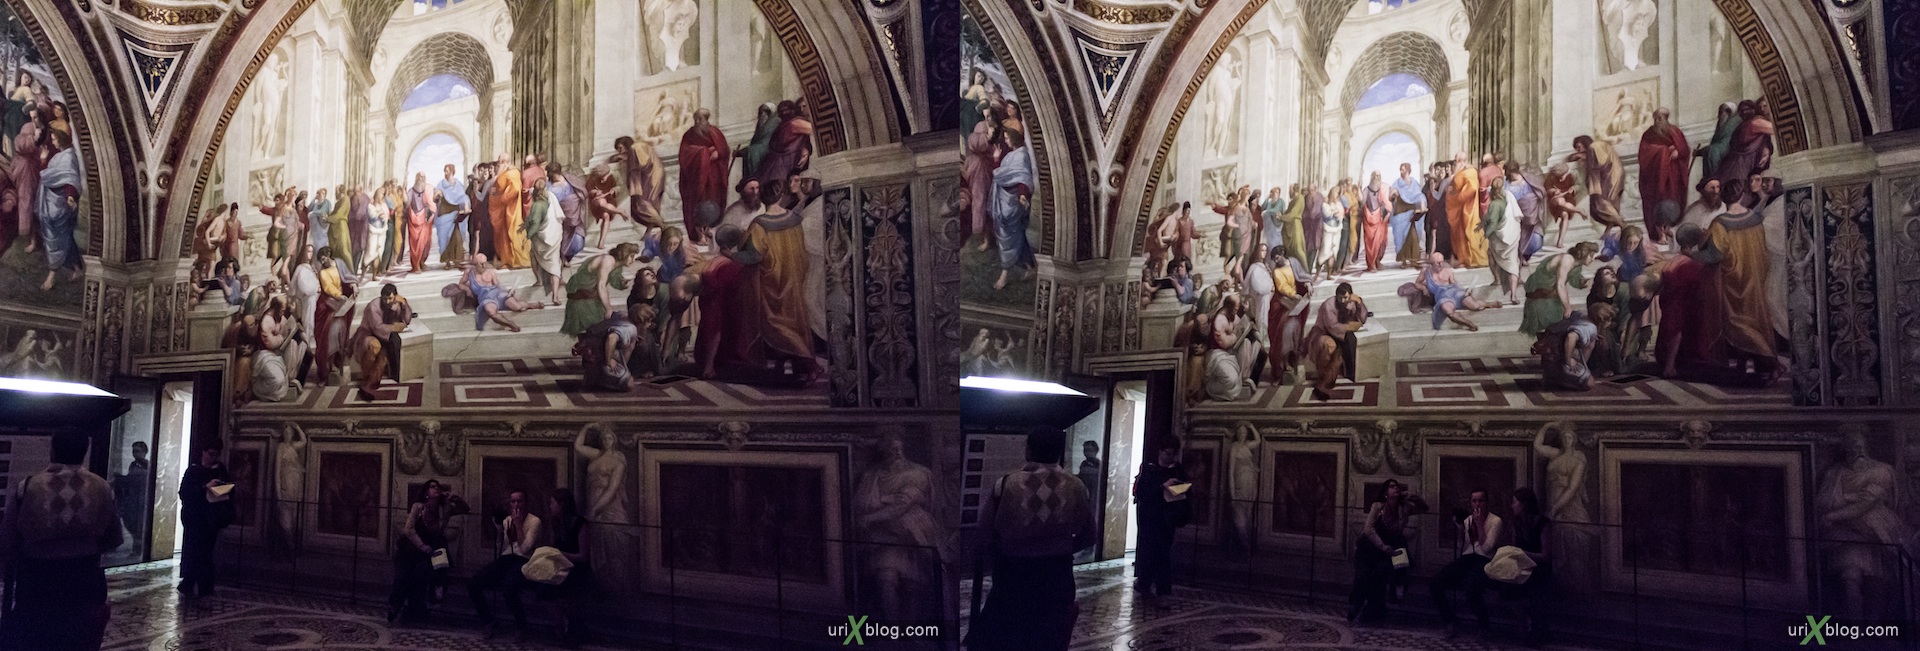 2012, музей, Ватикан, Рим, Италия, 3D, перекрёстные стереопары, стерео, стереопара, стереопары